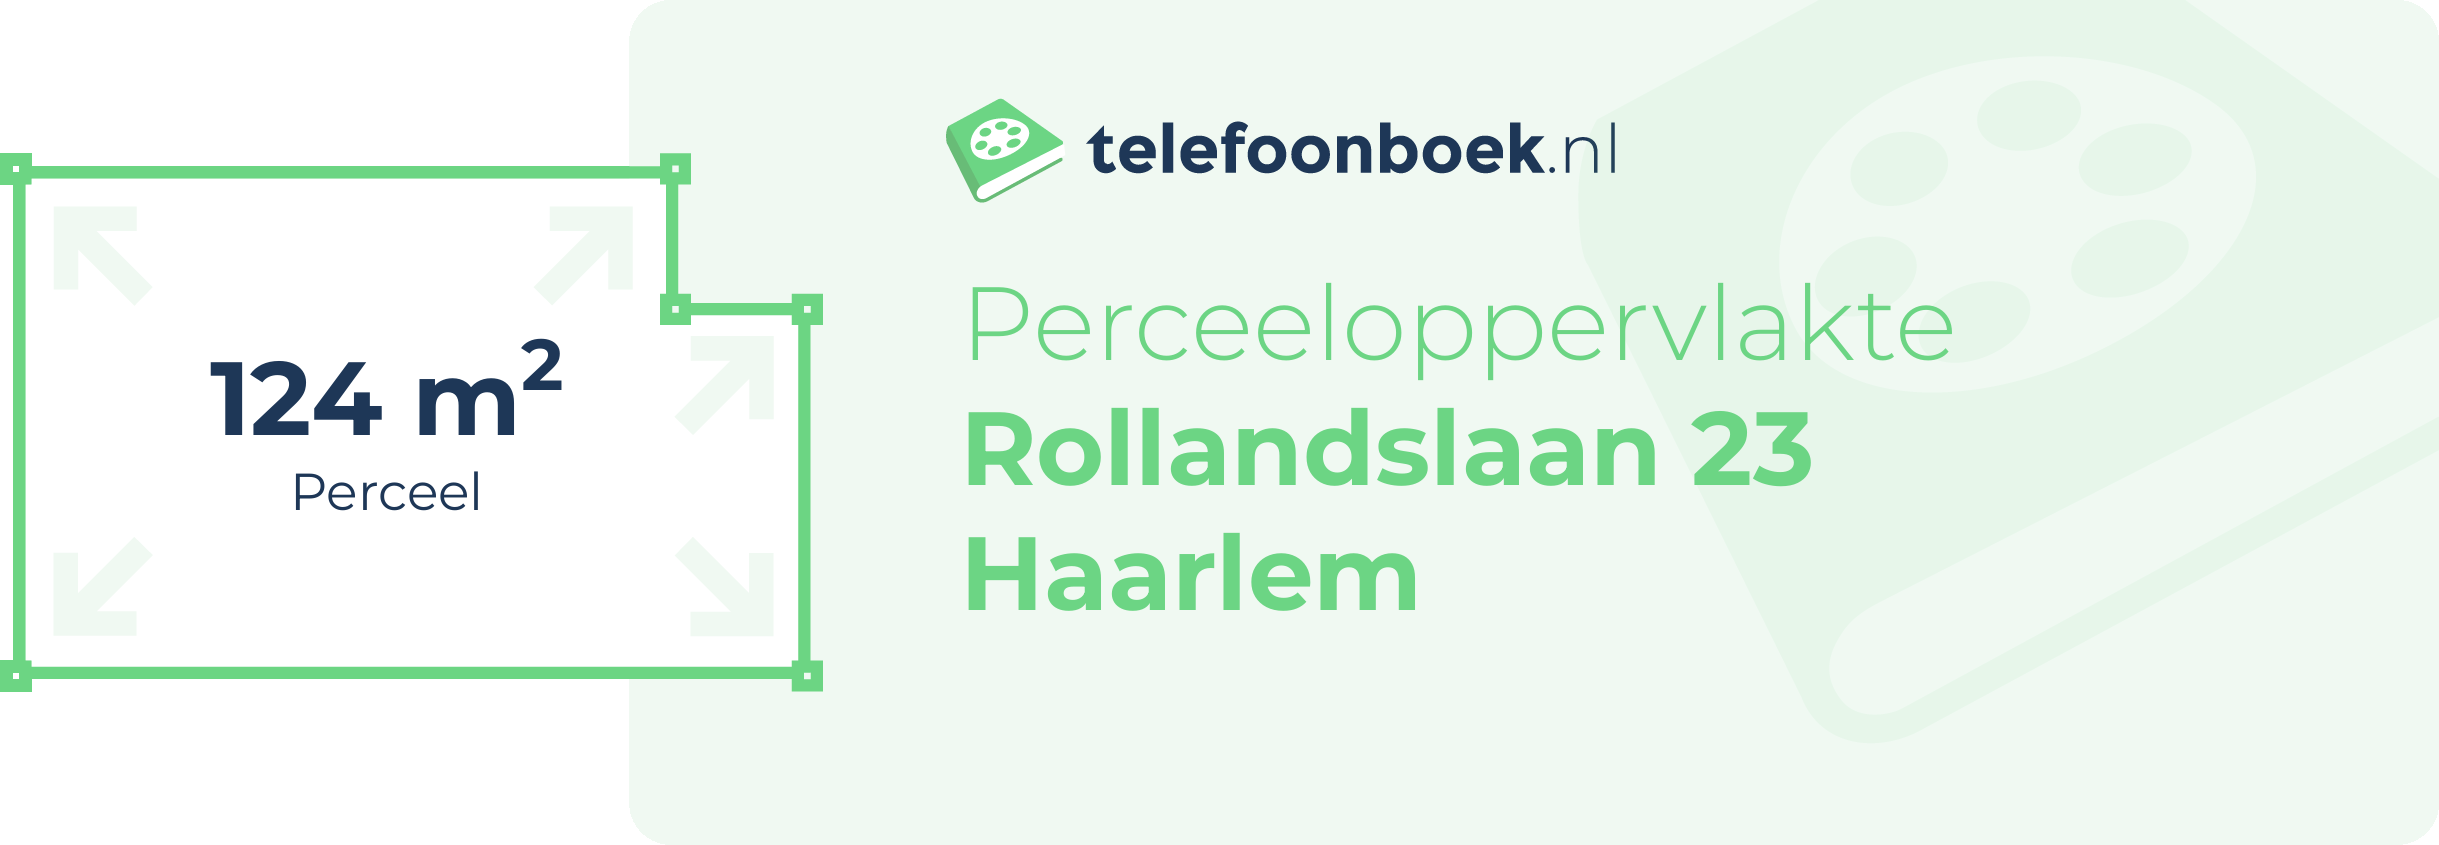 Perceeloppervlakte Rollandslaan 23 Haarlem